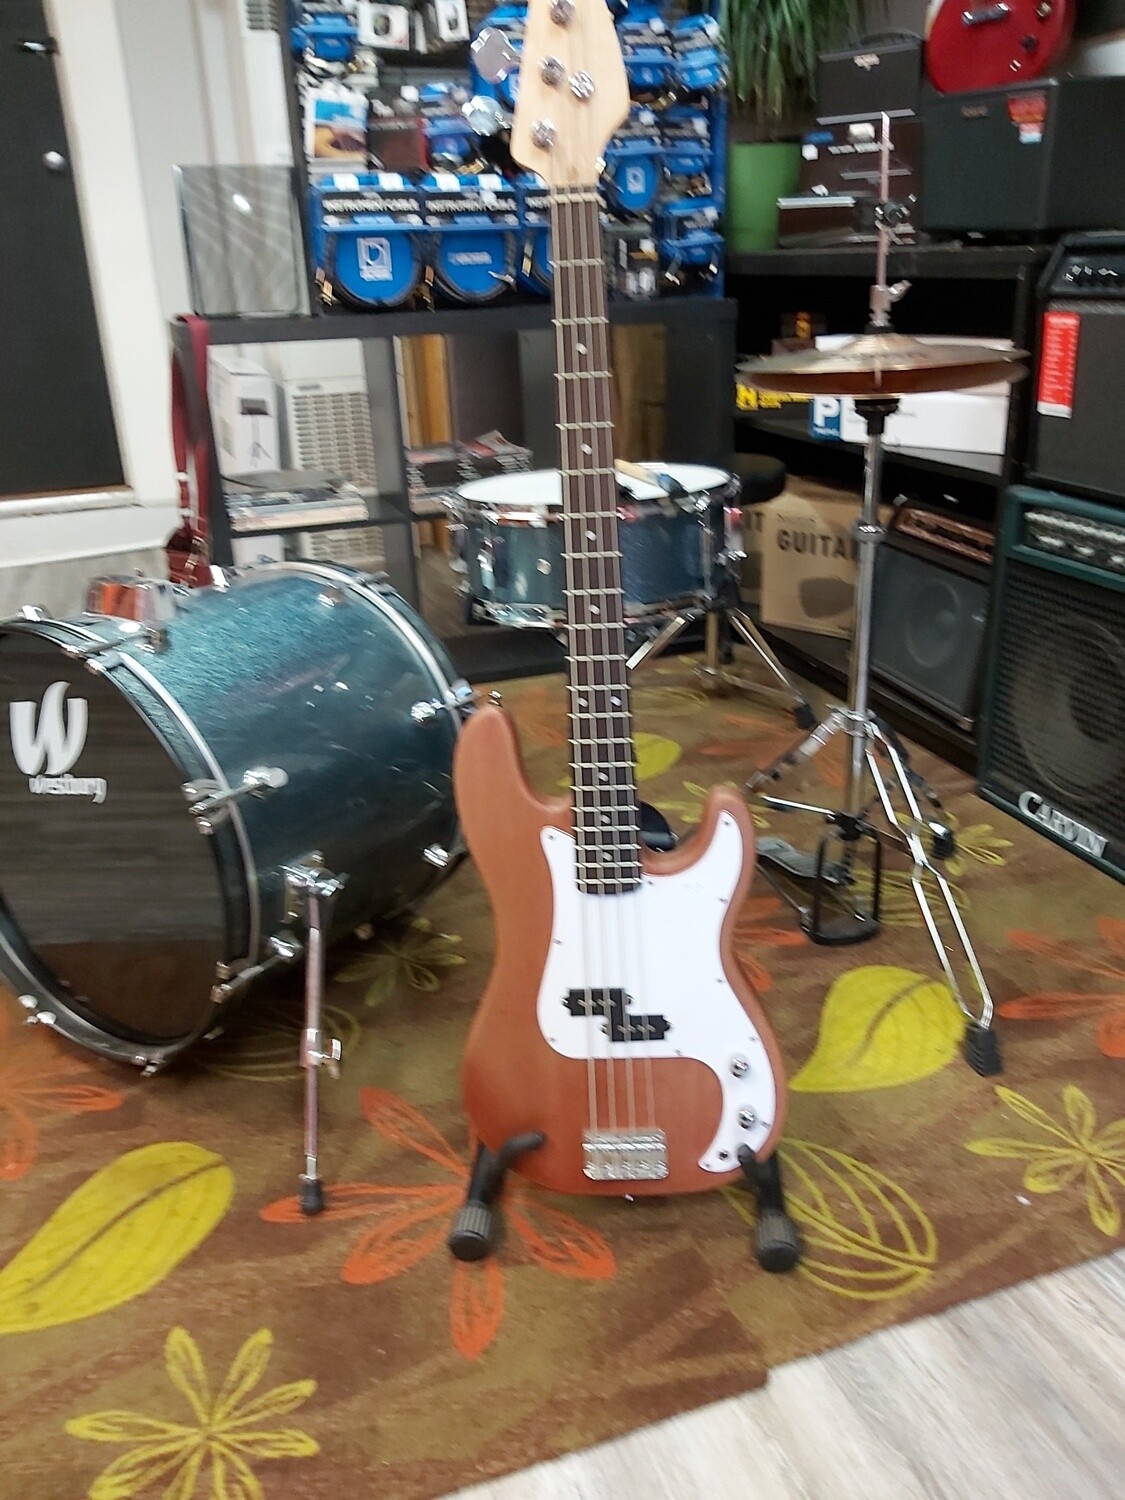 Solo Guitars Standard Bass Kit - Assembled